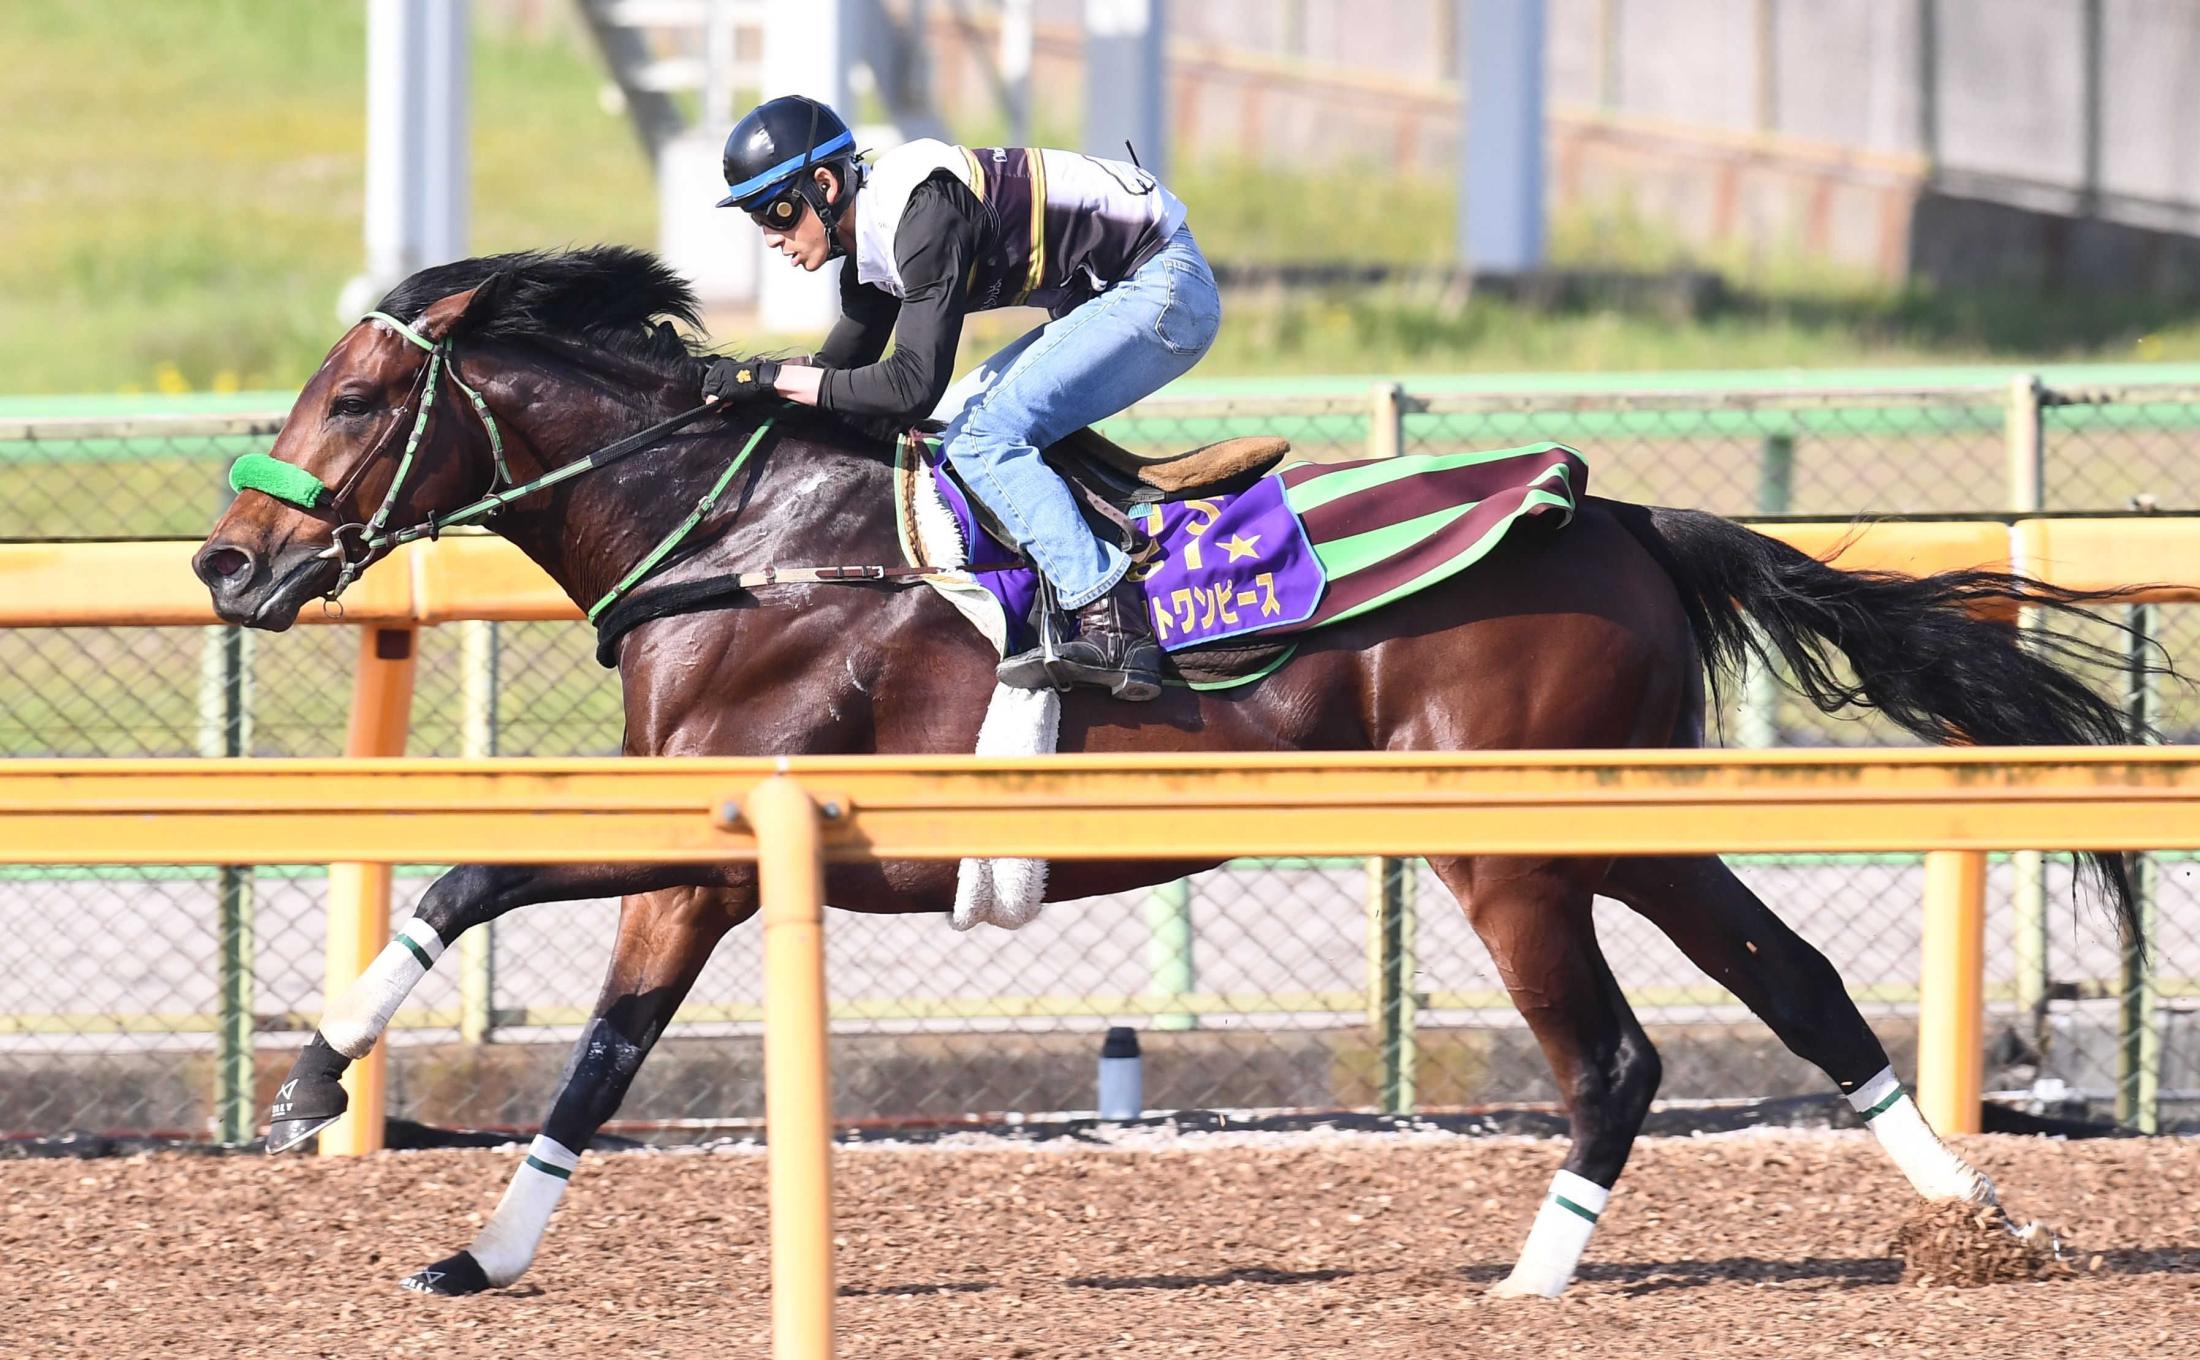 目黒記念 ブラストワンピース伸びた 悩みは馬体重 １５日計測で５５７キロ 競馬ニュース Netkeiba Com